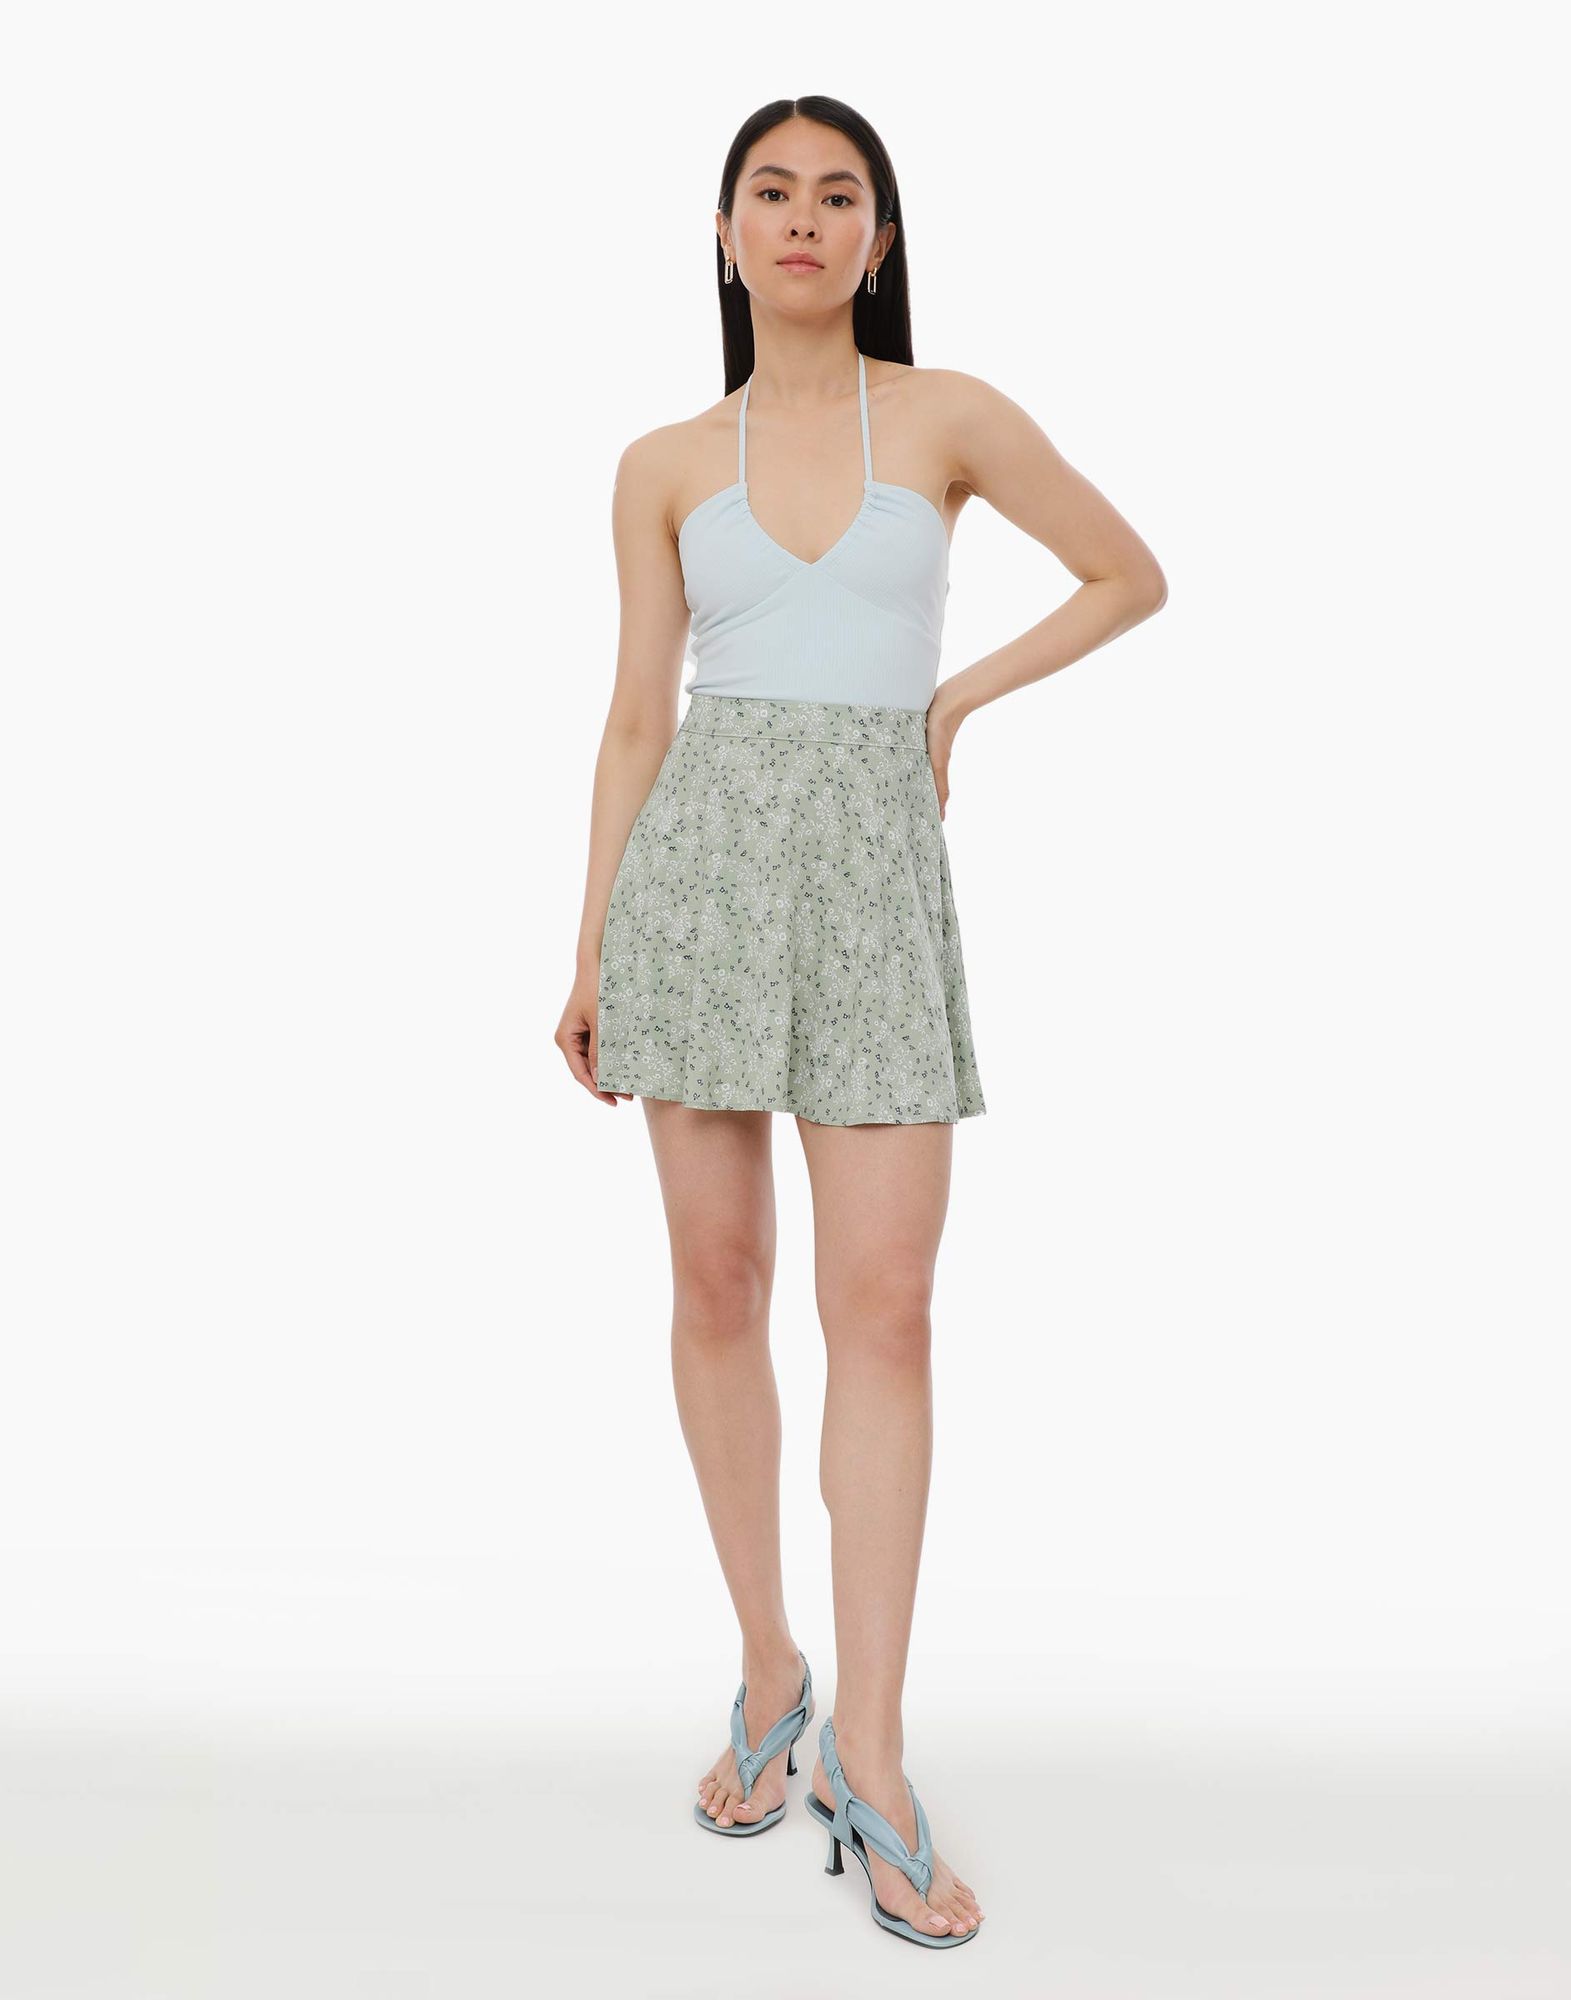 Оливковая расклёшенная юбка с растительным принтом-1